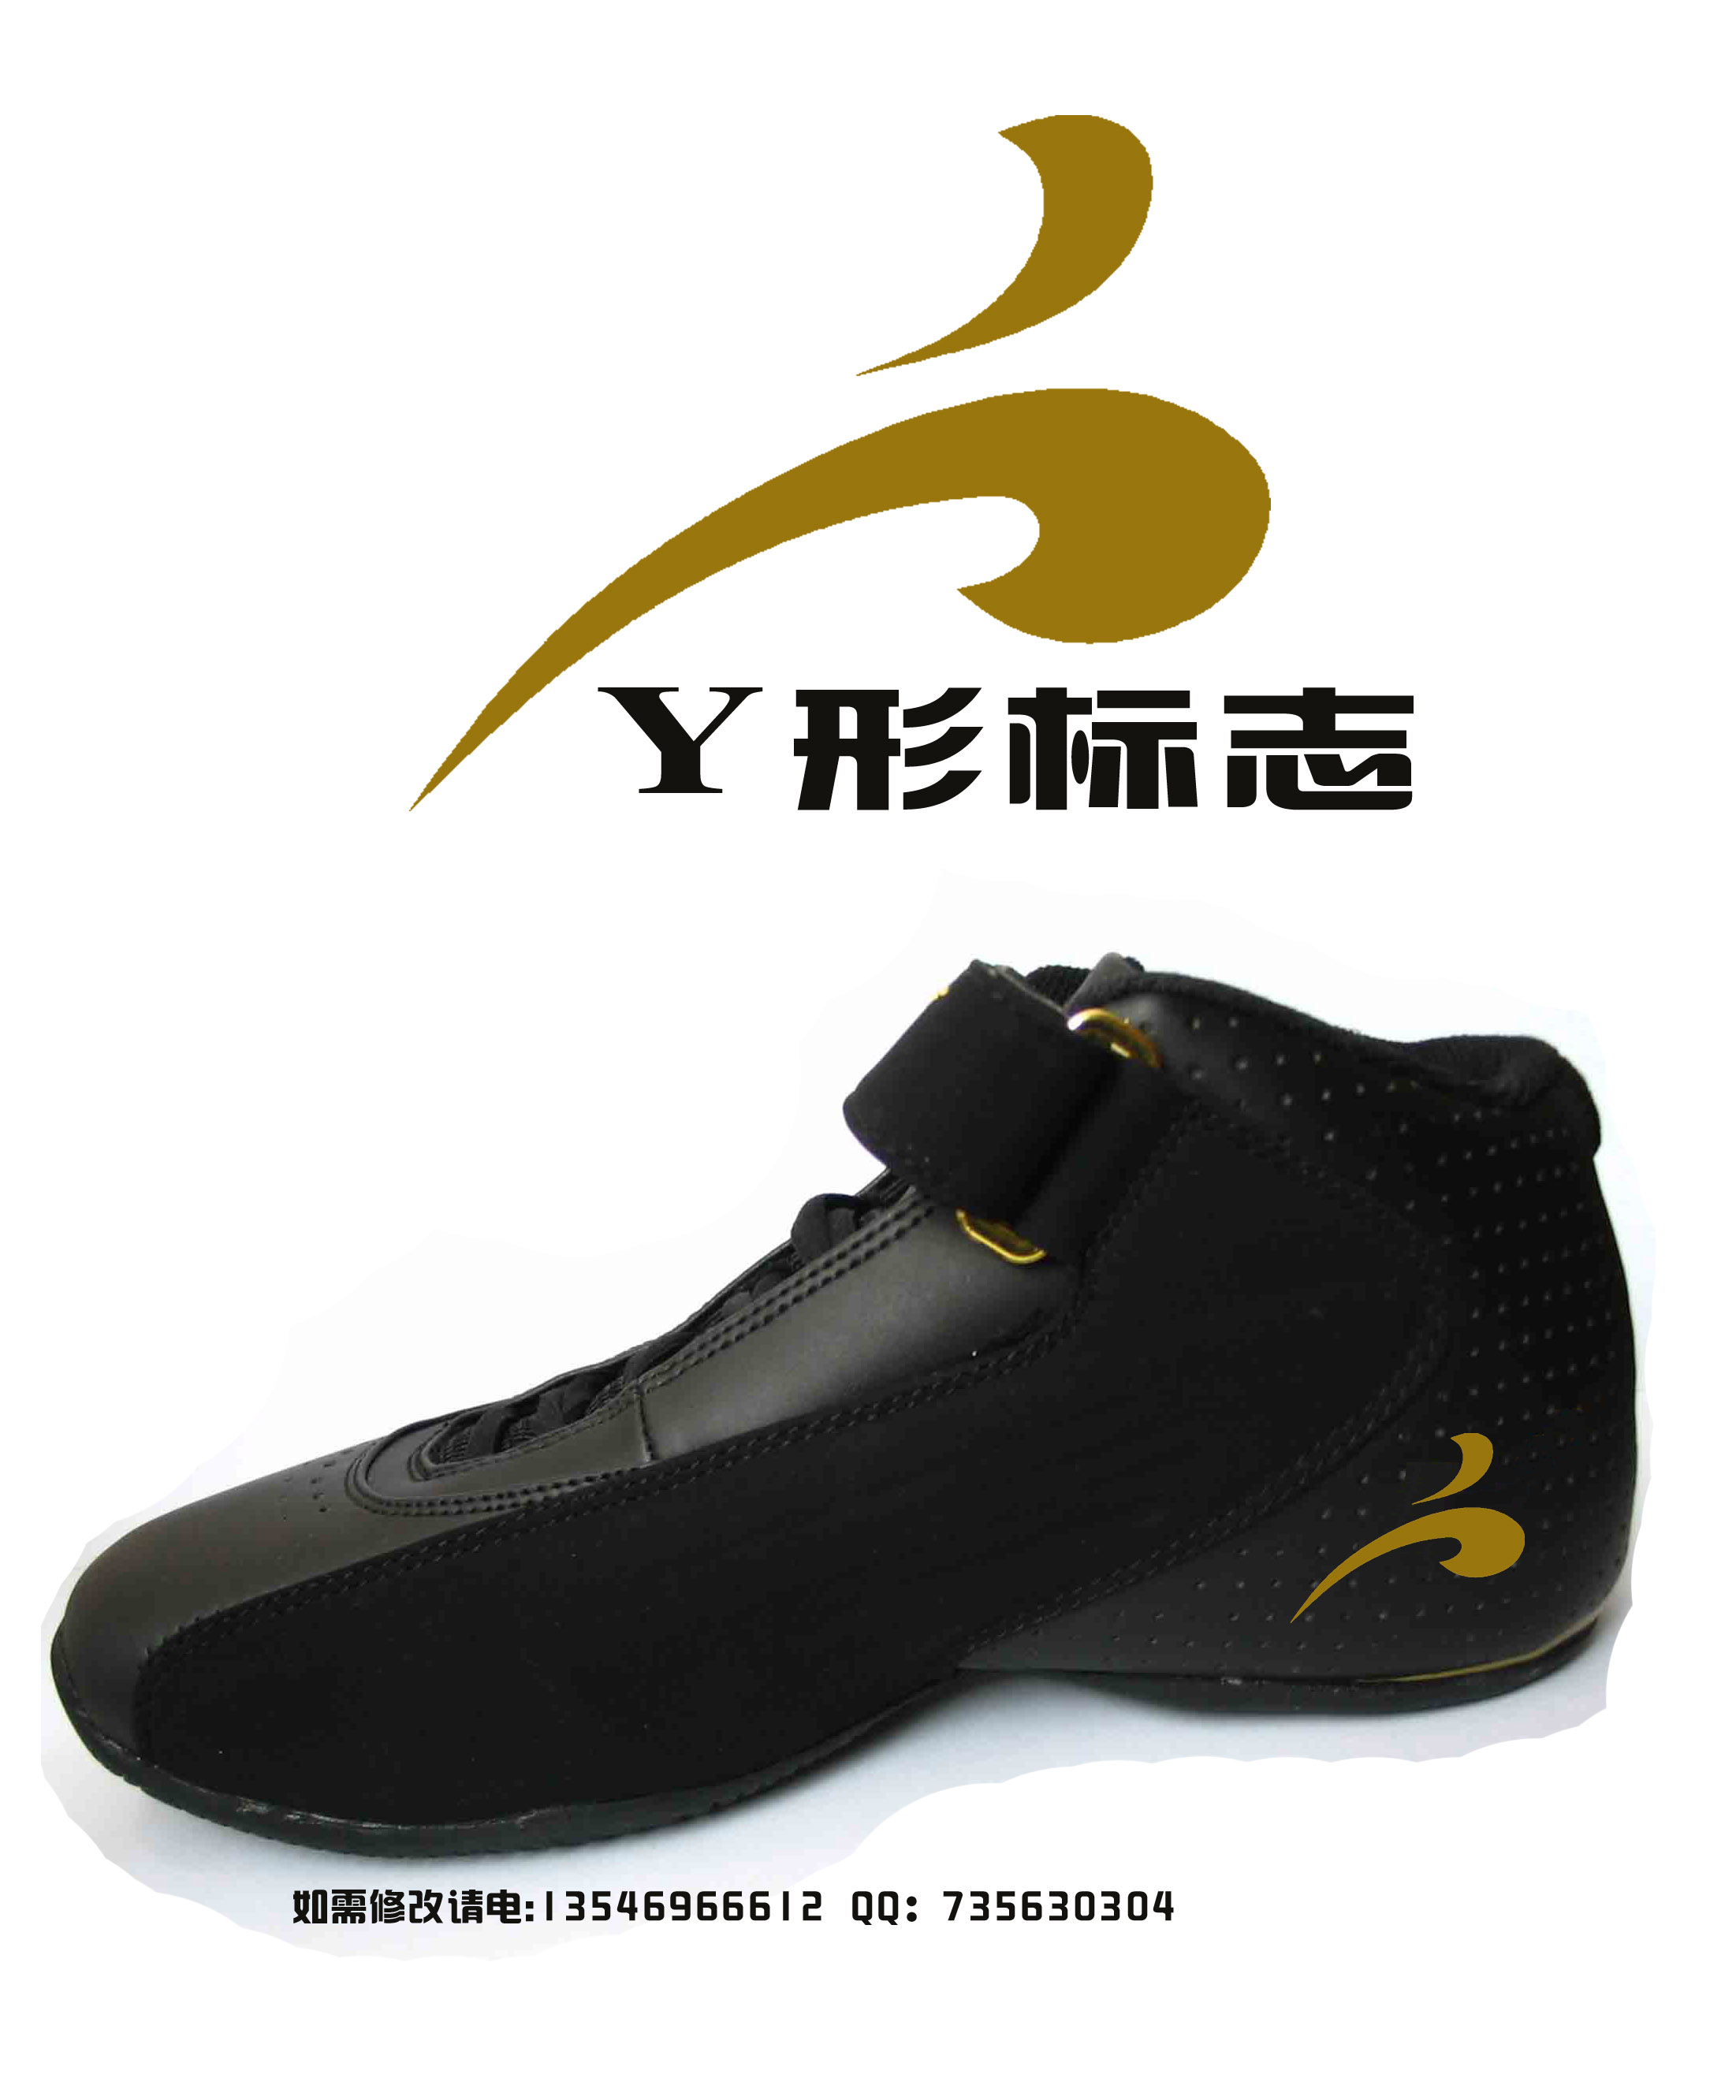 设计一个y的商标 用于鞋的商标方面